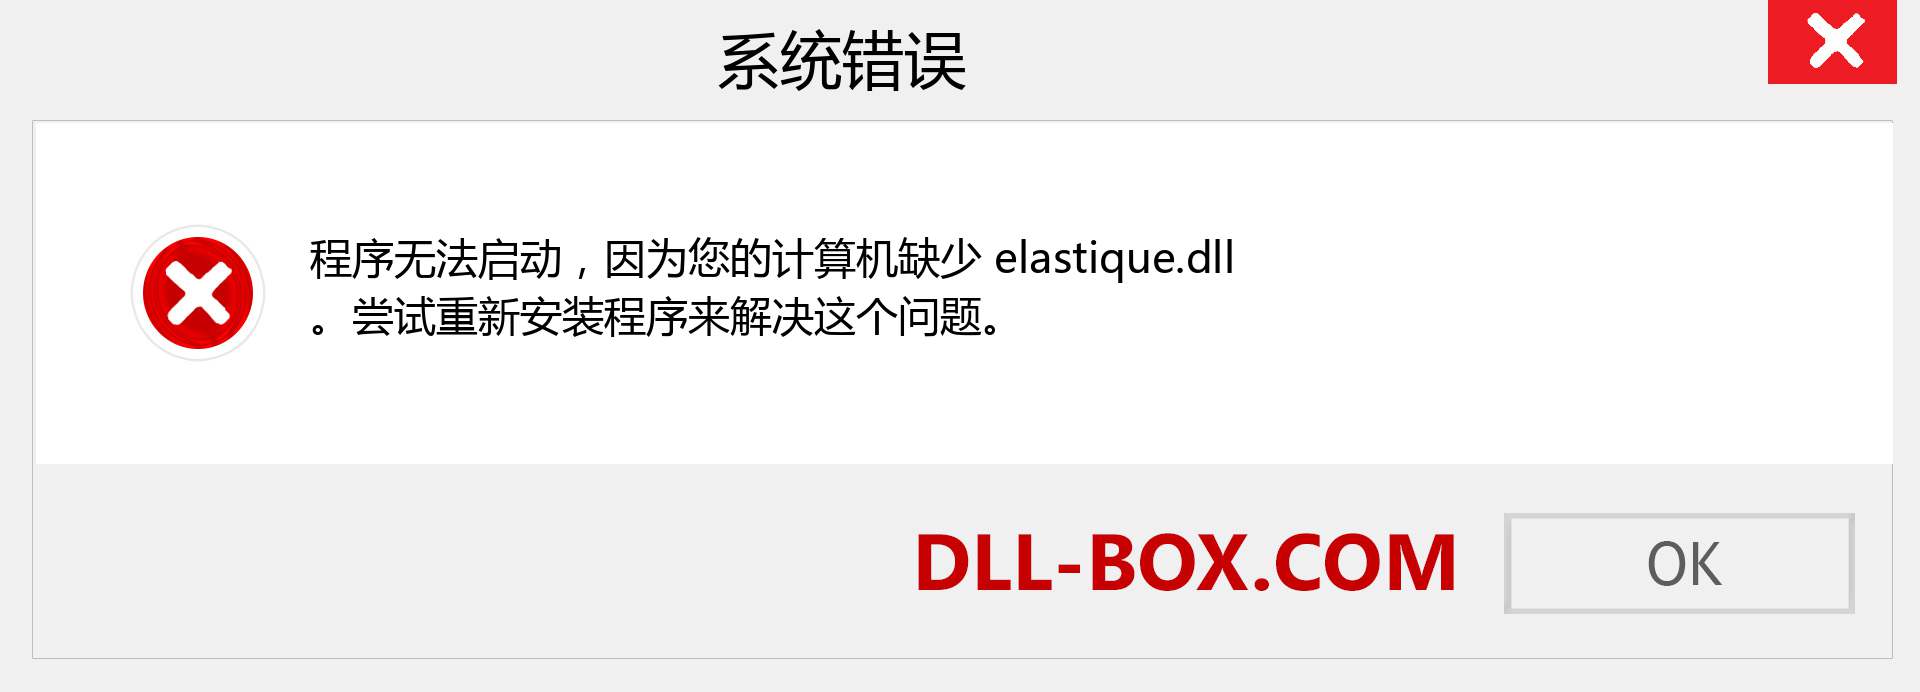 elastique.dll 文件丢失？。 适用于 Windows 7、8、10 的下载 - 修复 Windows、照片、图像上的 elastique dll 丢失错误